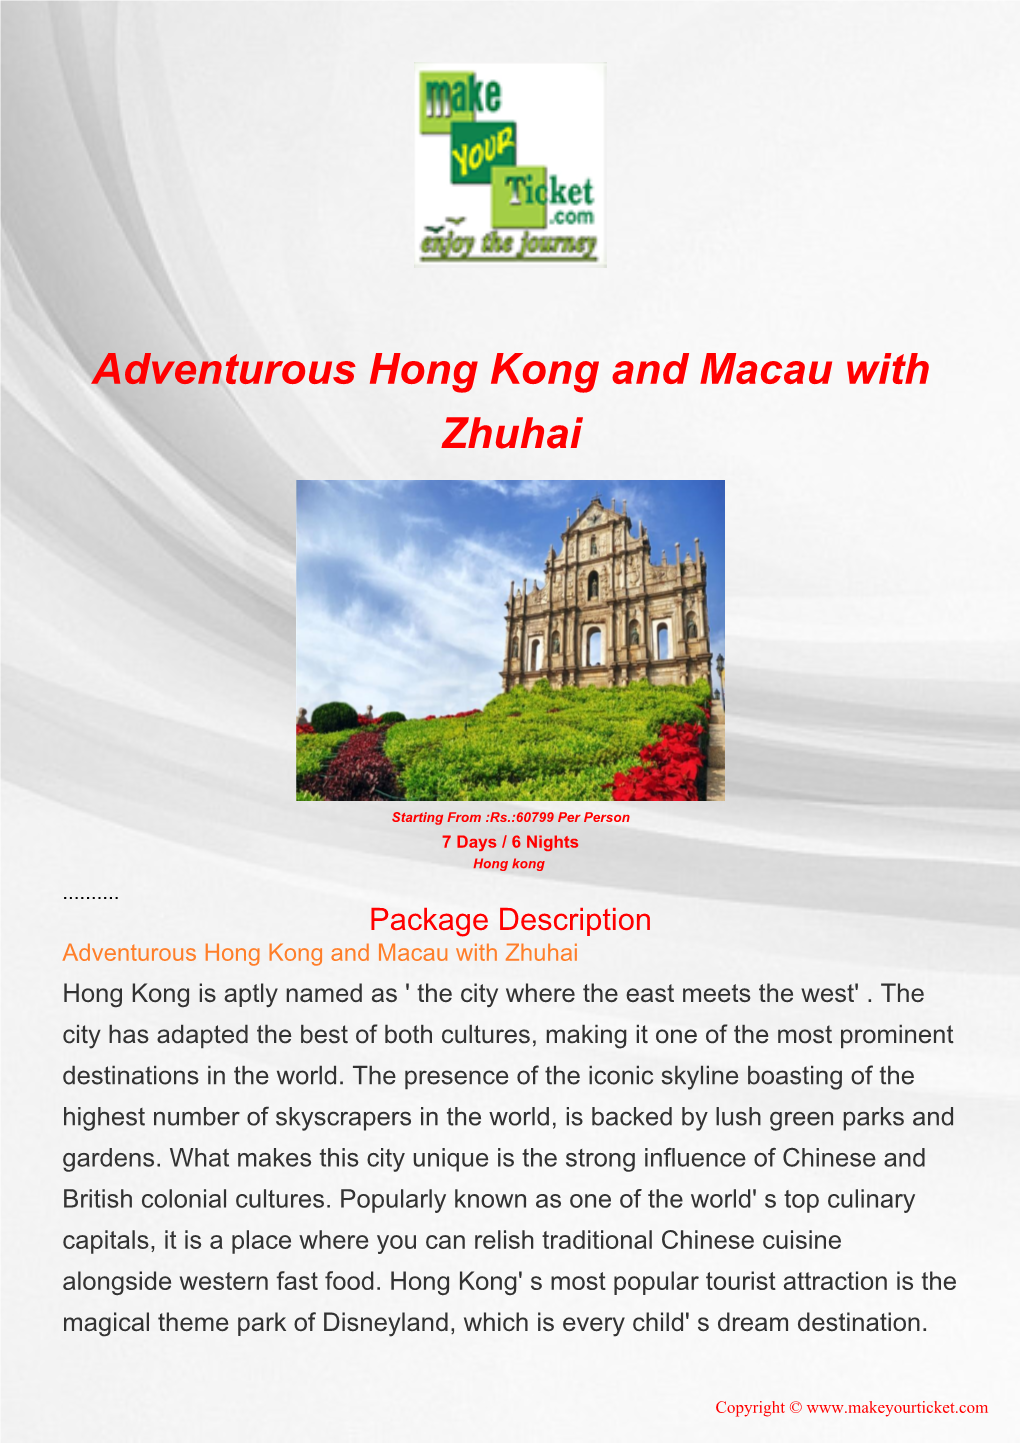 Adventurous Hong Kong and Macau with Zhuhai